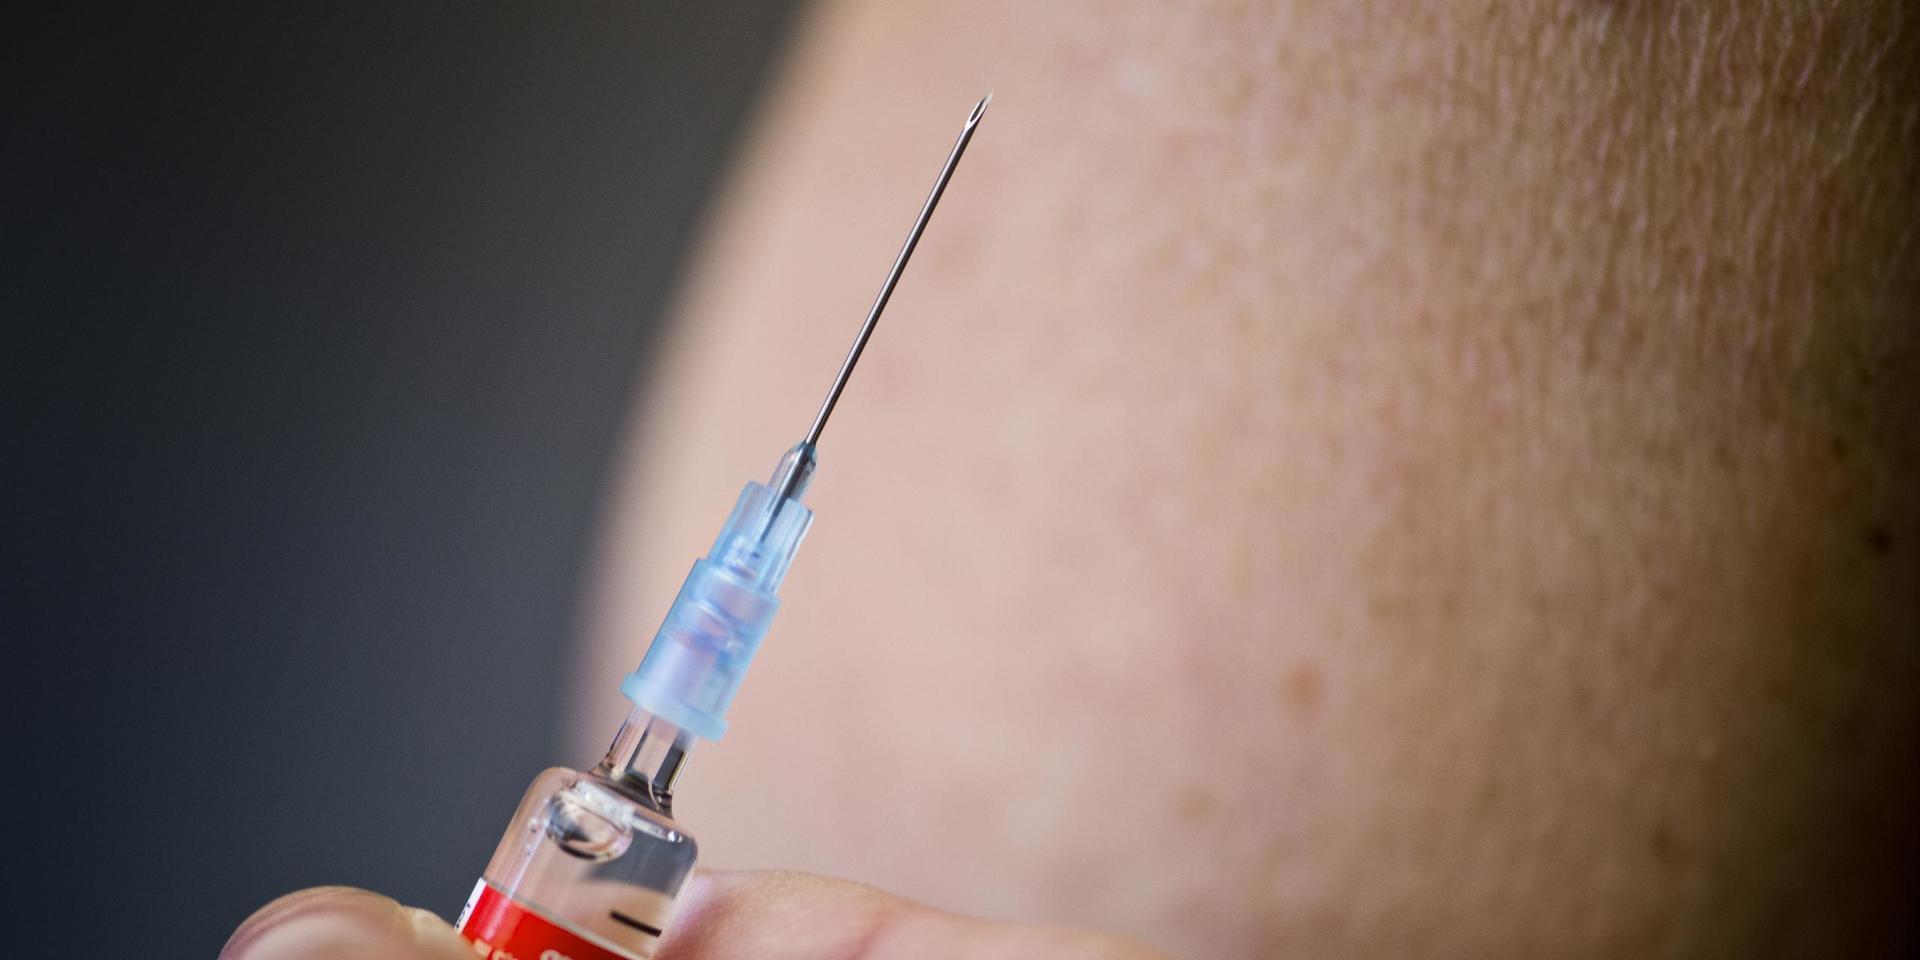 Nu är det dags att vaccinera sig mot influensa. Något som kan underlätta för sjukvården i den pågående coronapandemin.